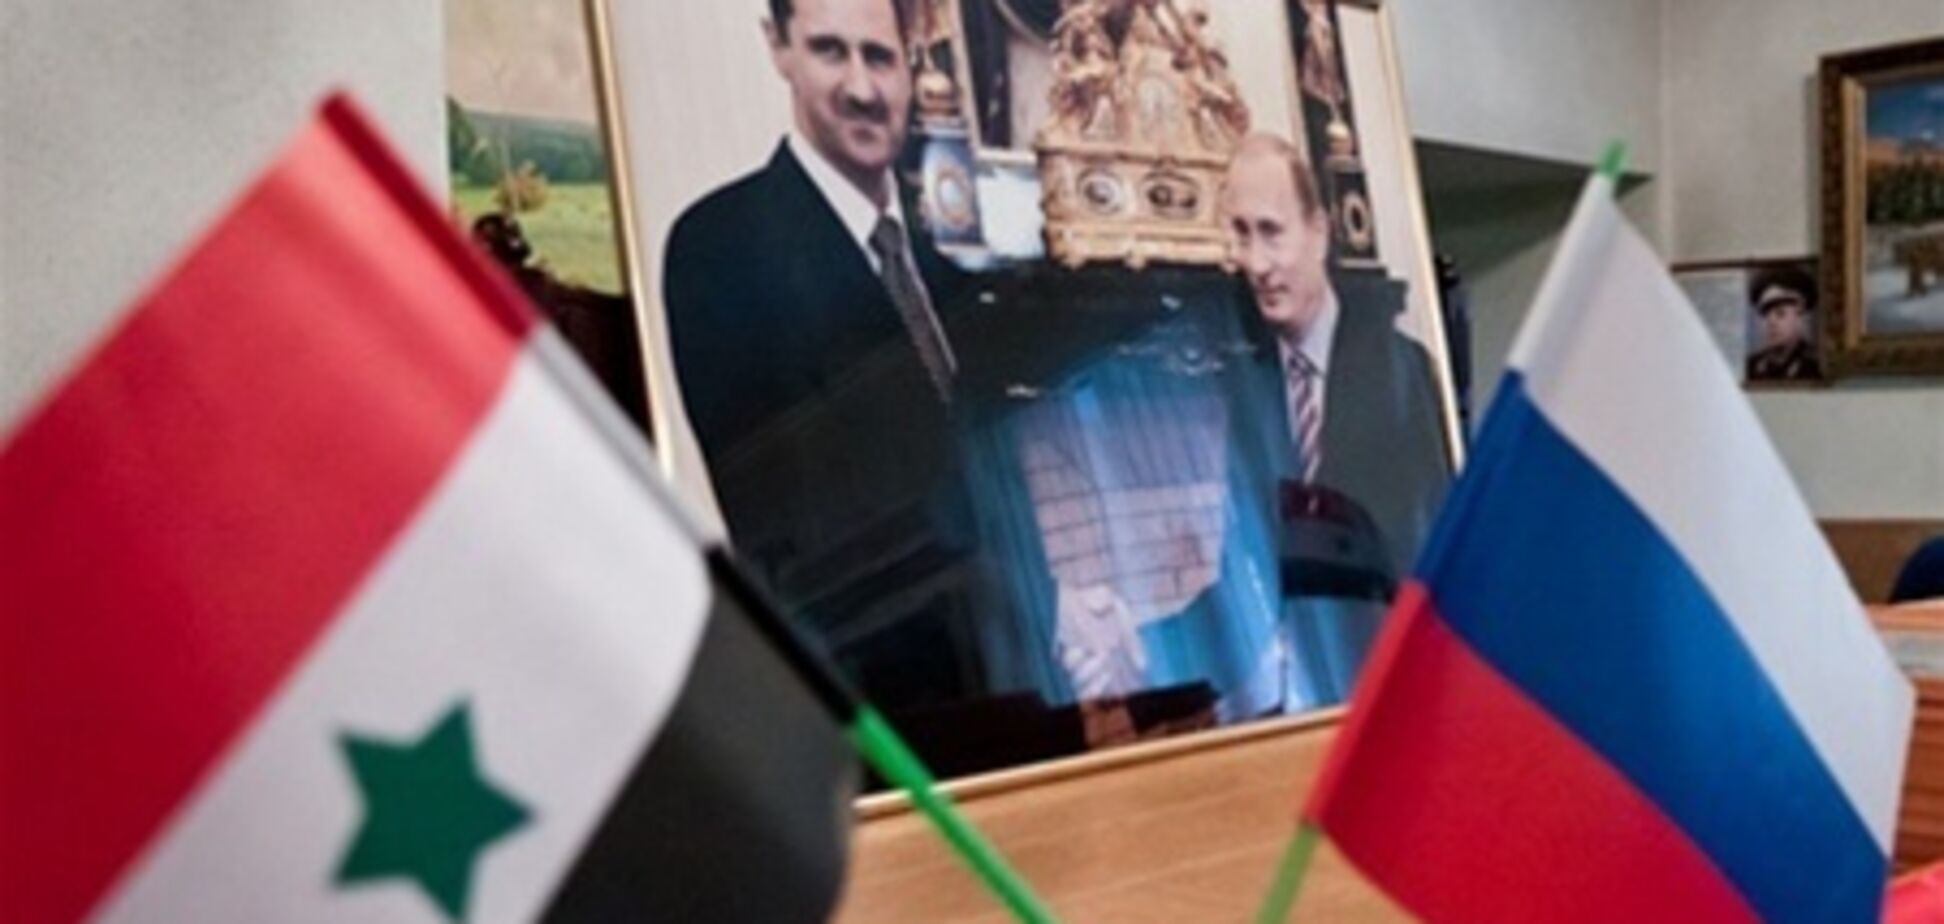 ЗМІ: Росія використовує Асада для повернення авторитету в світі